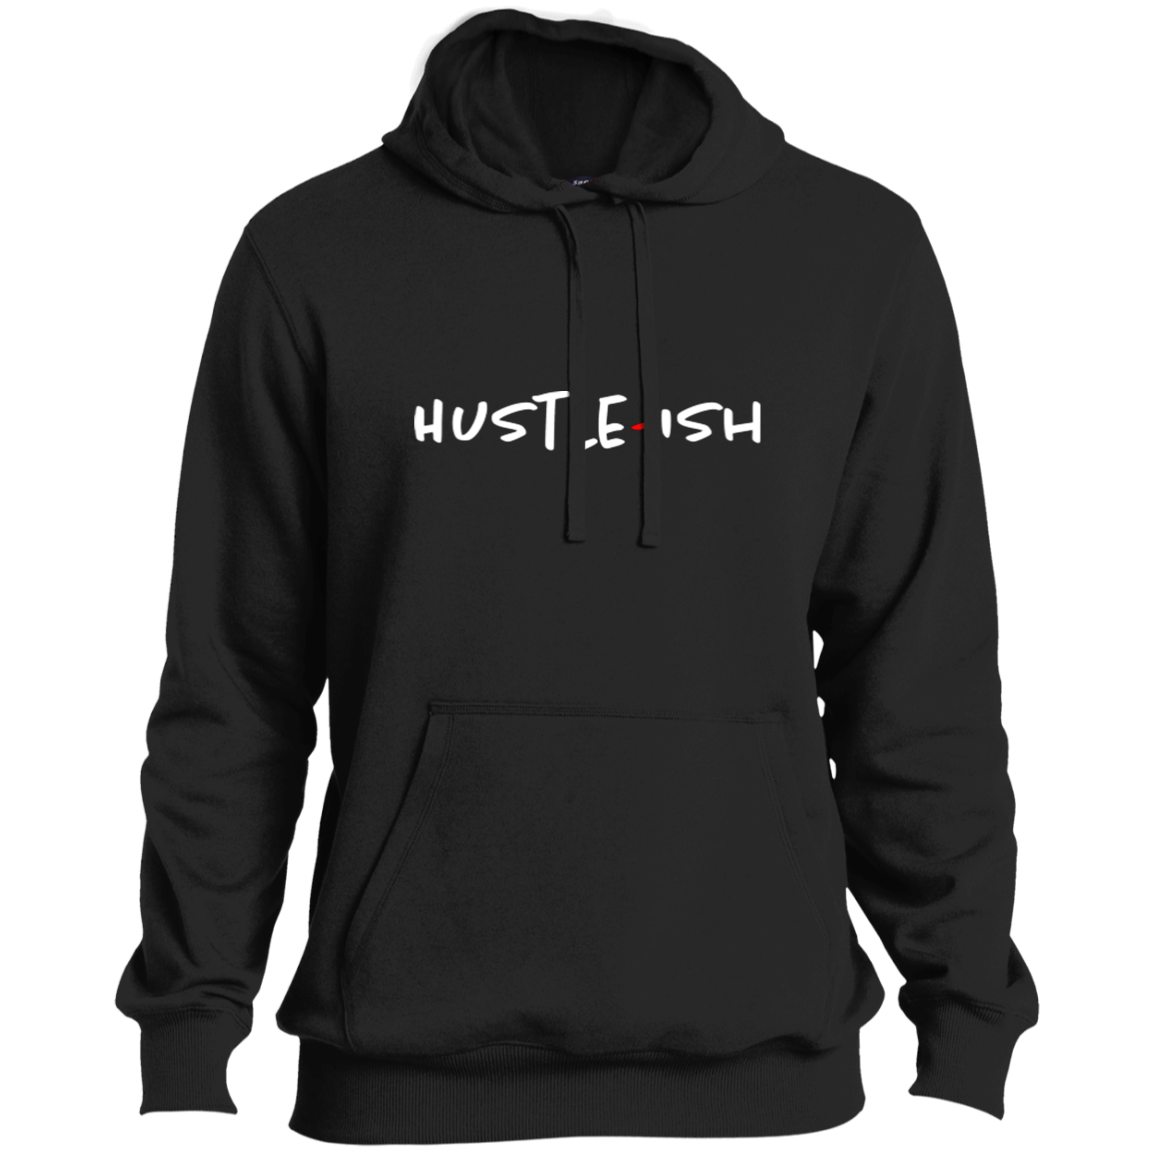 Hustle-Ish Pullover Hoodie